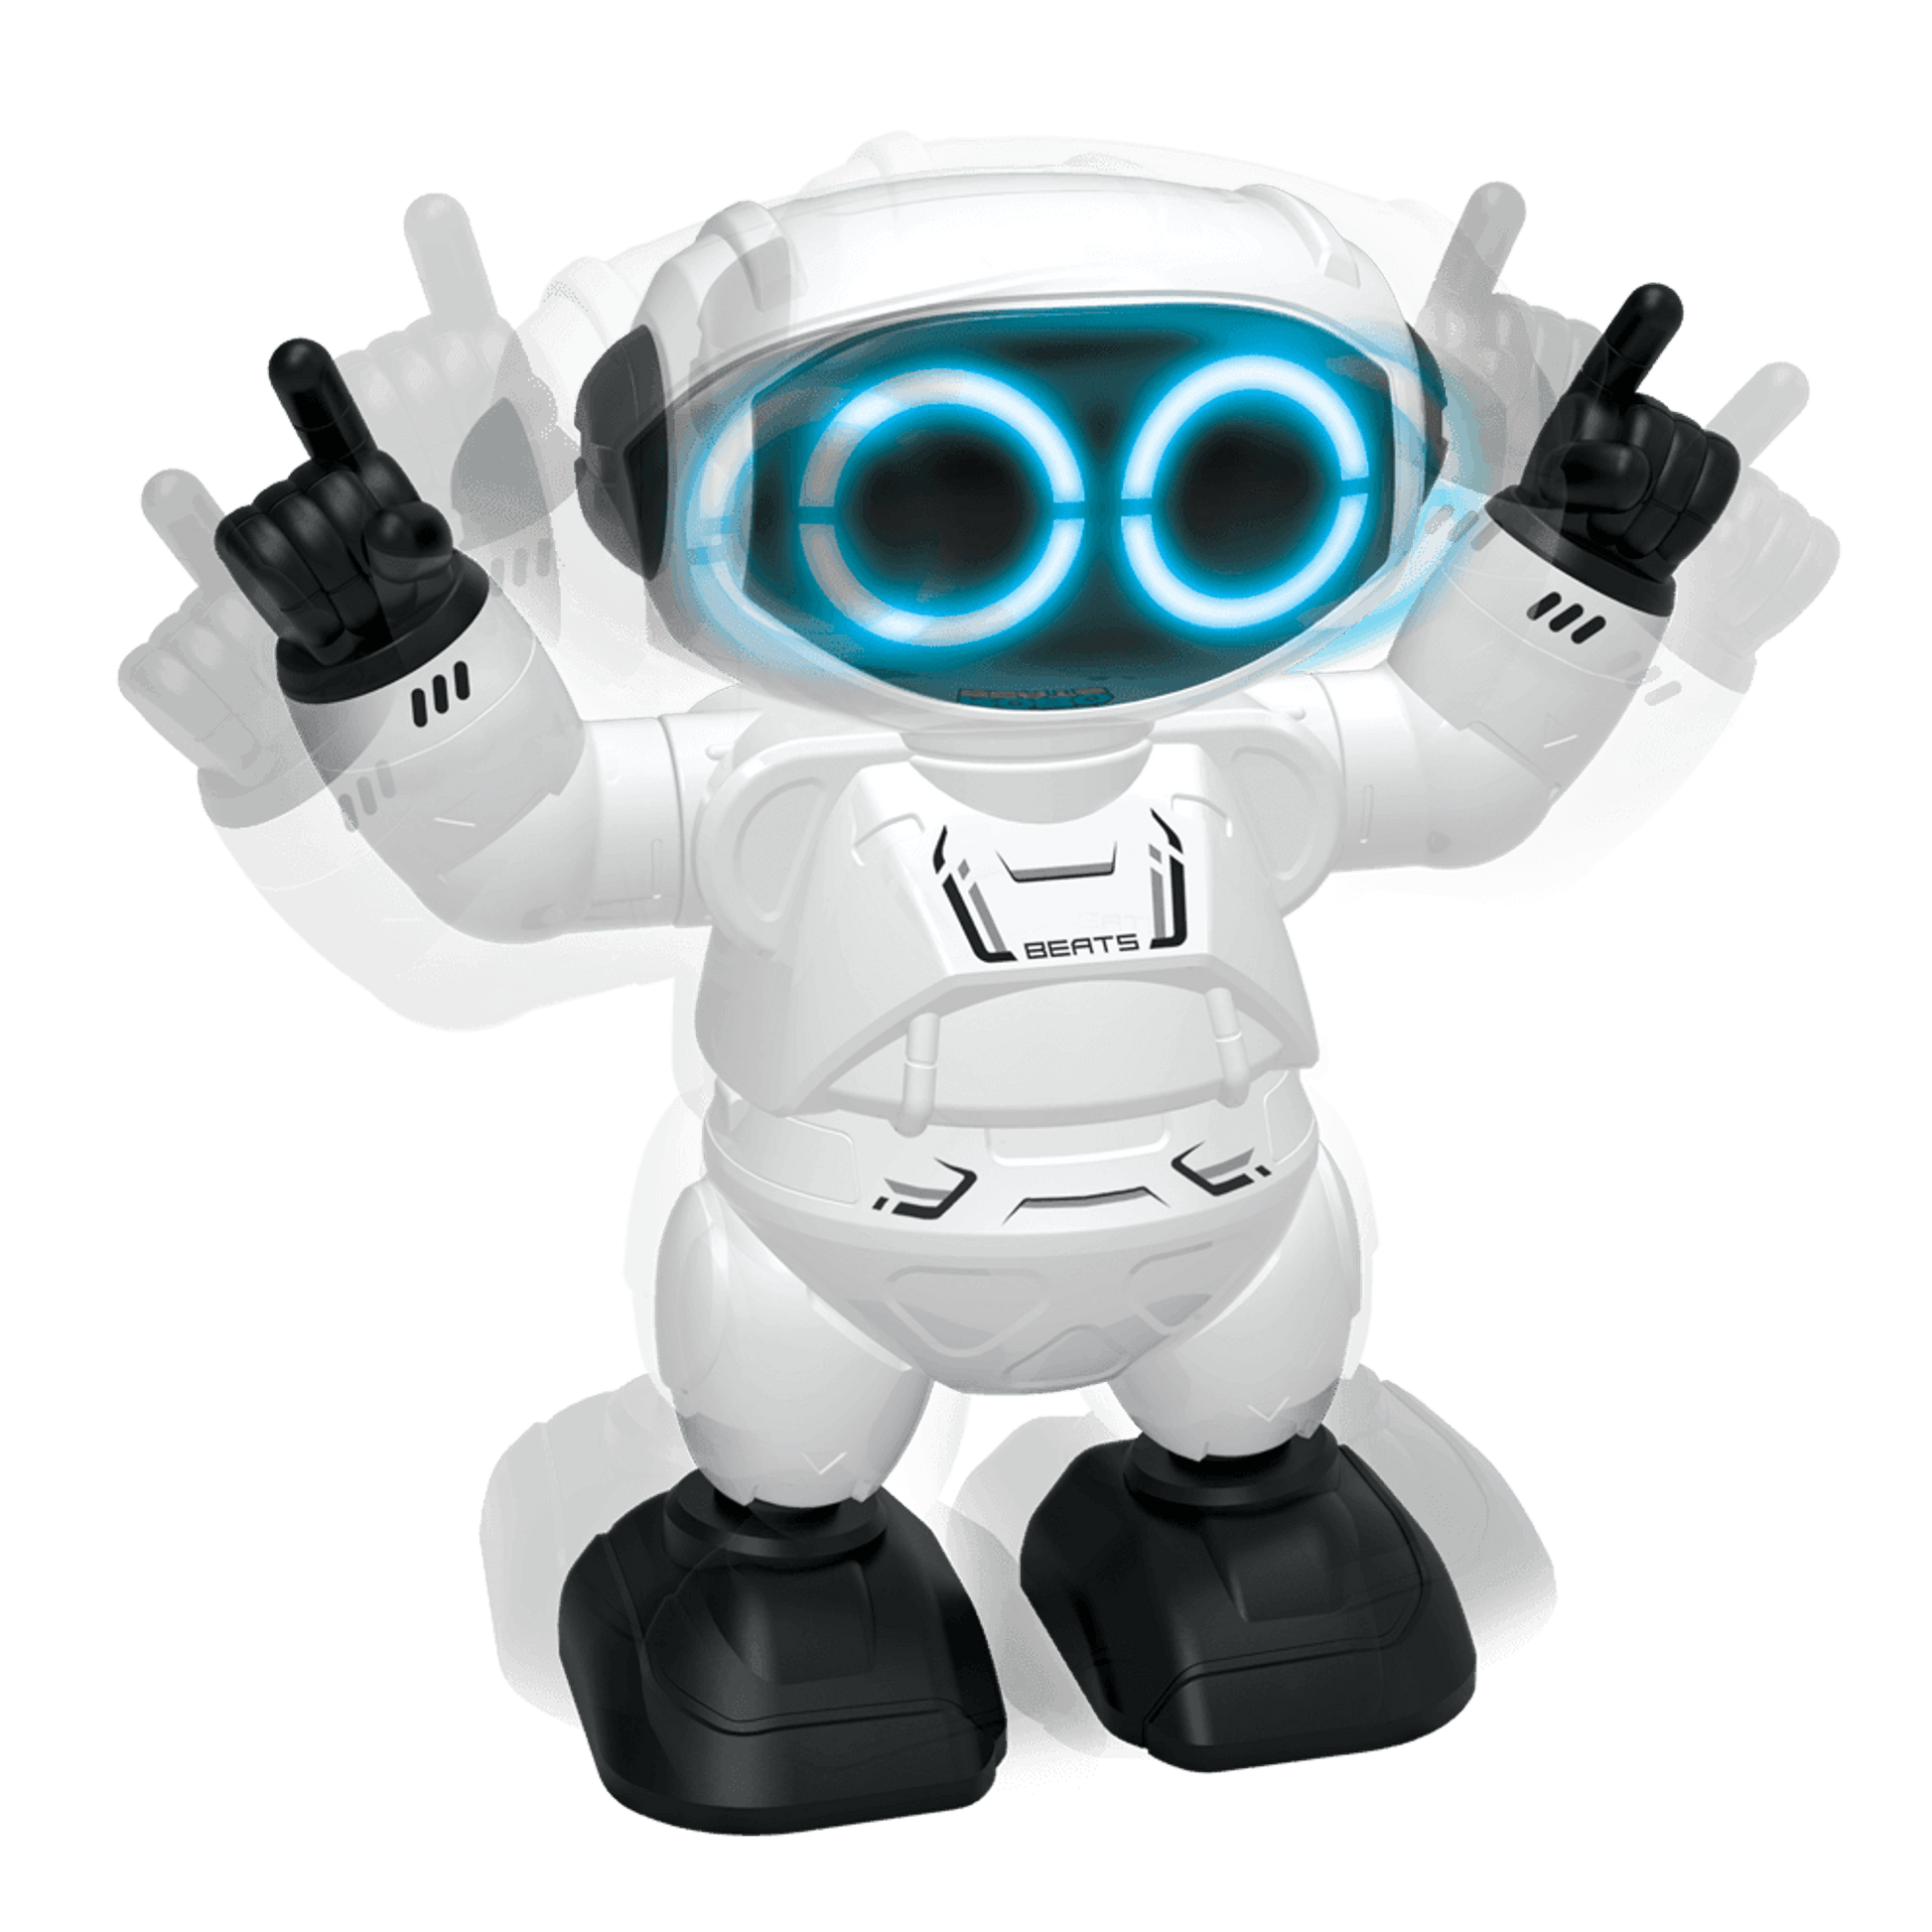 Robo Beats - YCOO - Toybox Tales